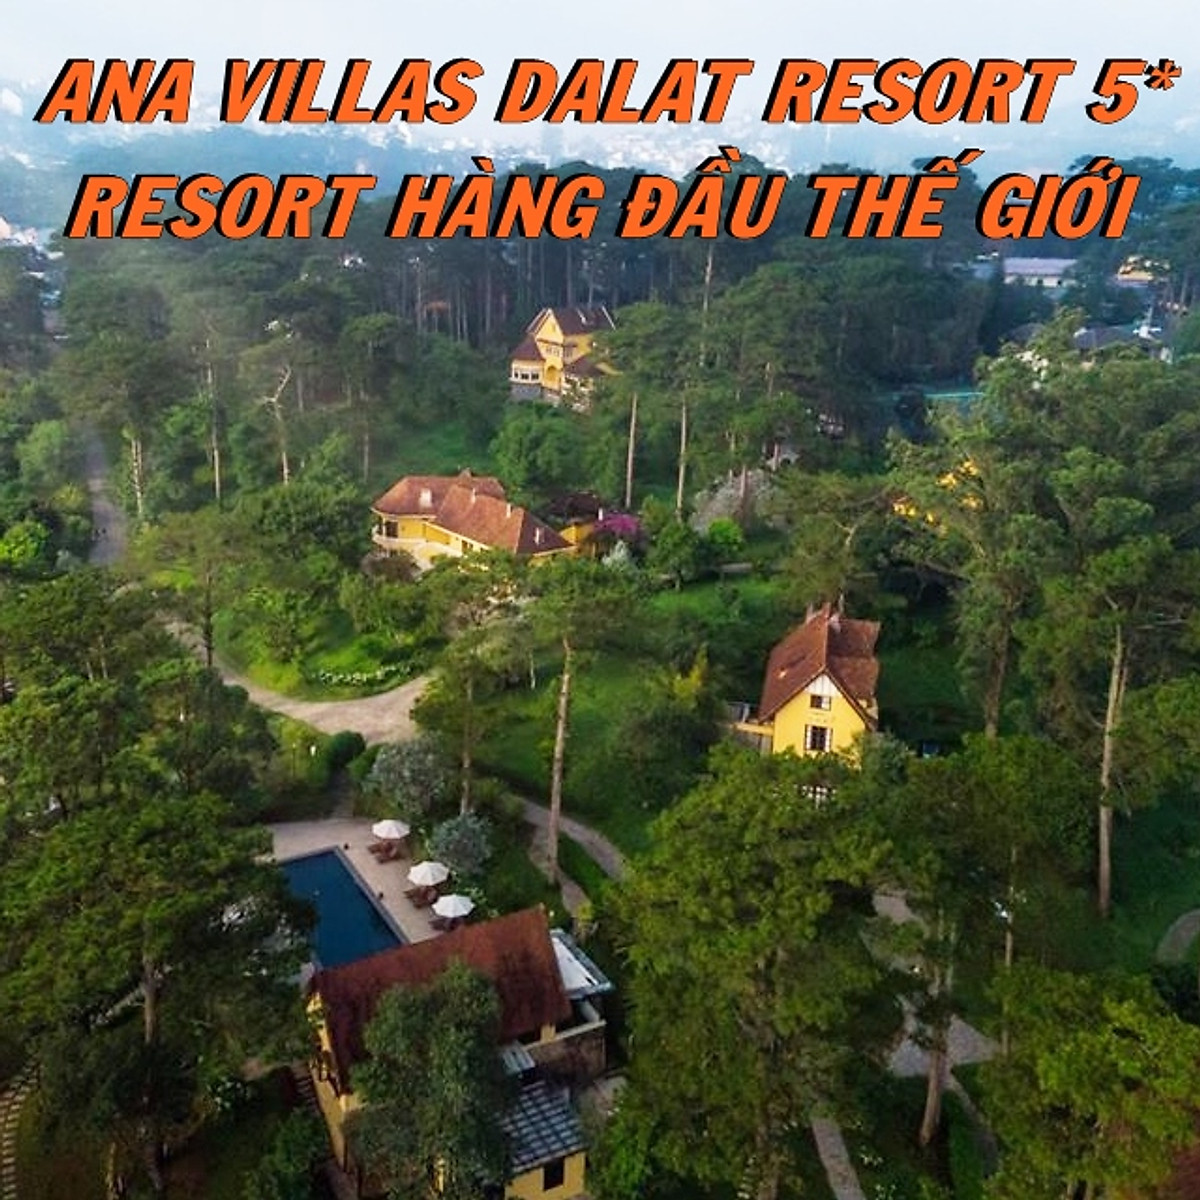 Mua Ana Villas Dalat Resort & Spa 5* Đà Lạt - Gói Tham Quan, Tiệc ...